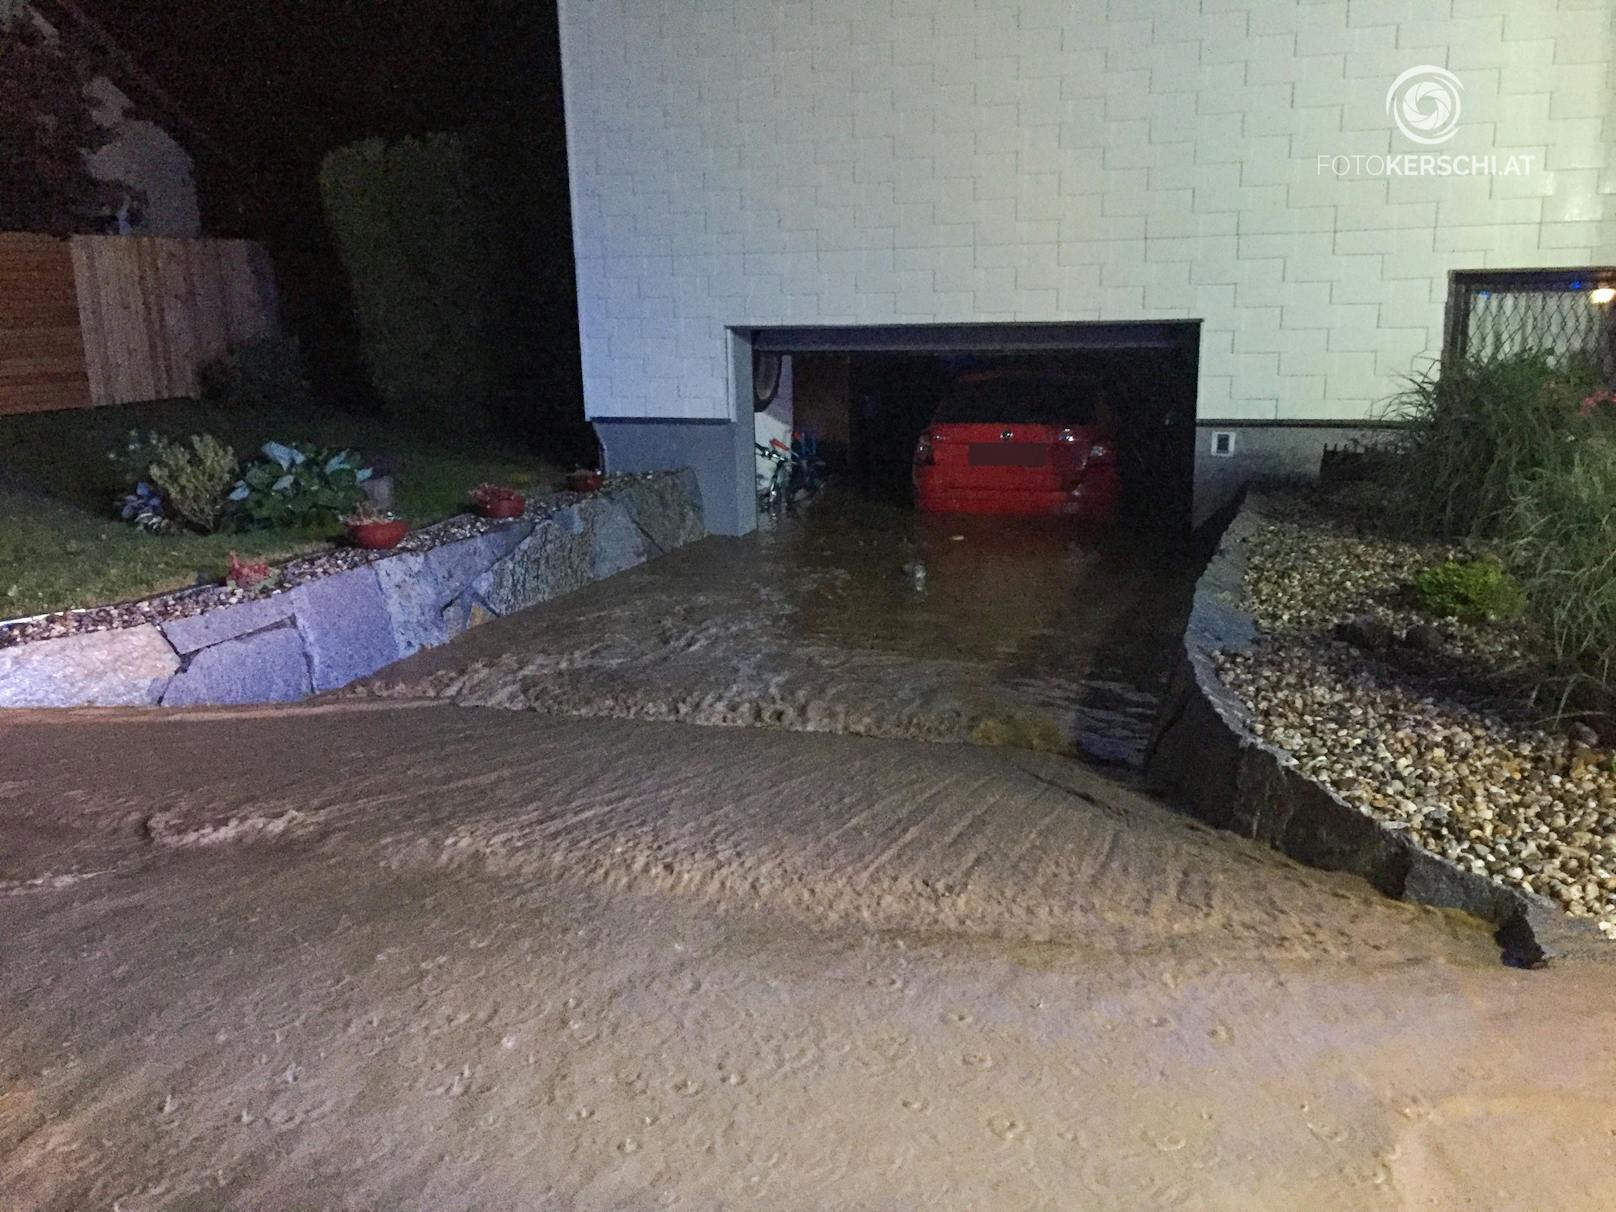 Bei einem Einfamilienhaus, bei dem die Garage leicht abschüssig steht, drang soviel Wasser ein, dass das Auto aufschwamm.